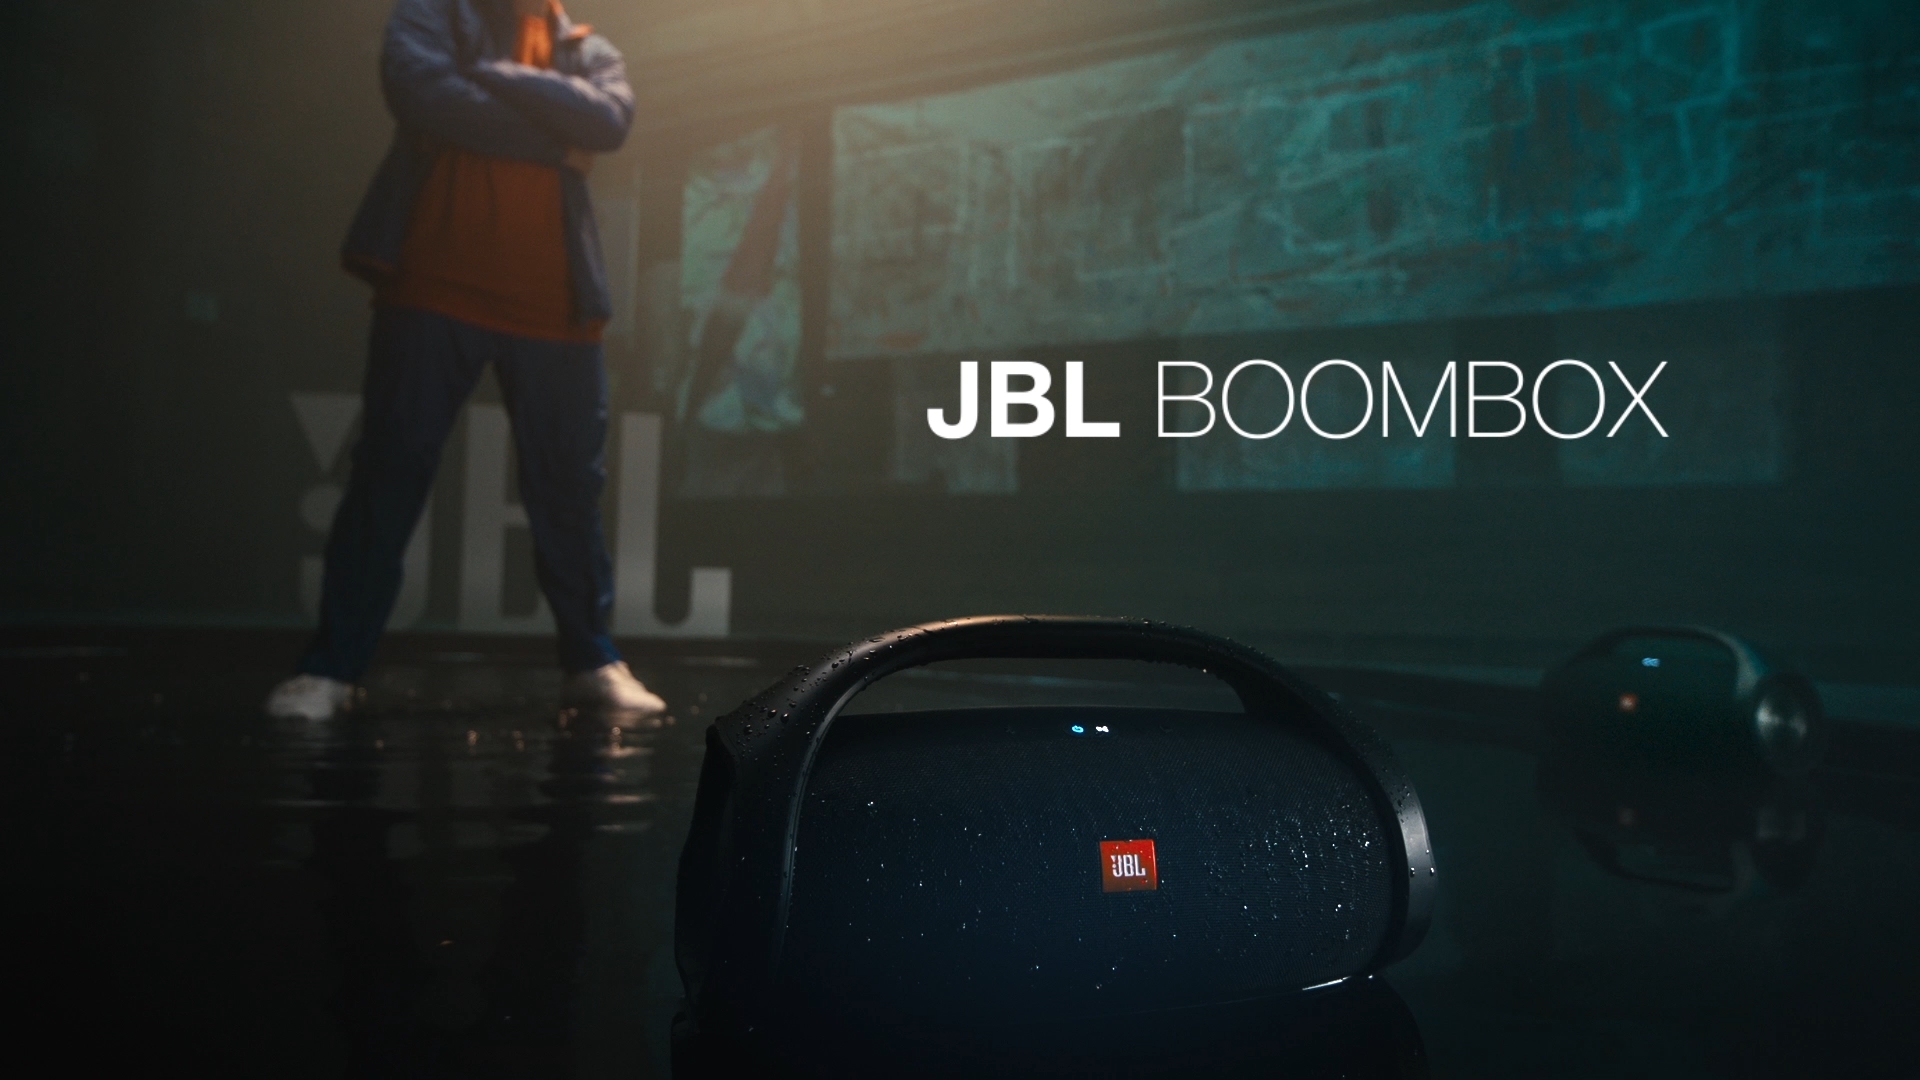 JBL Boombox - аквасцена